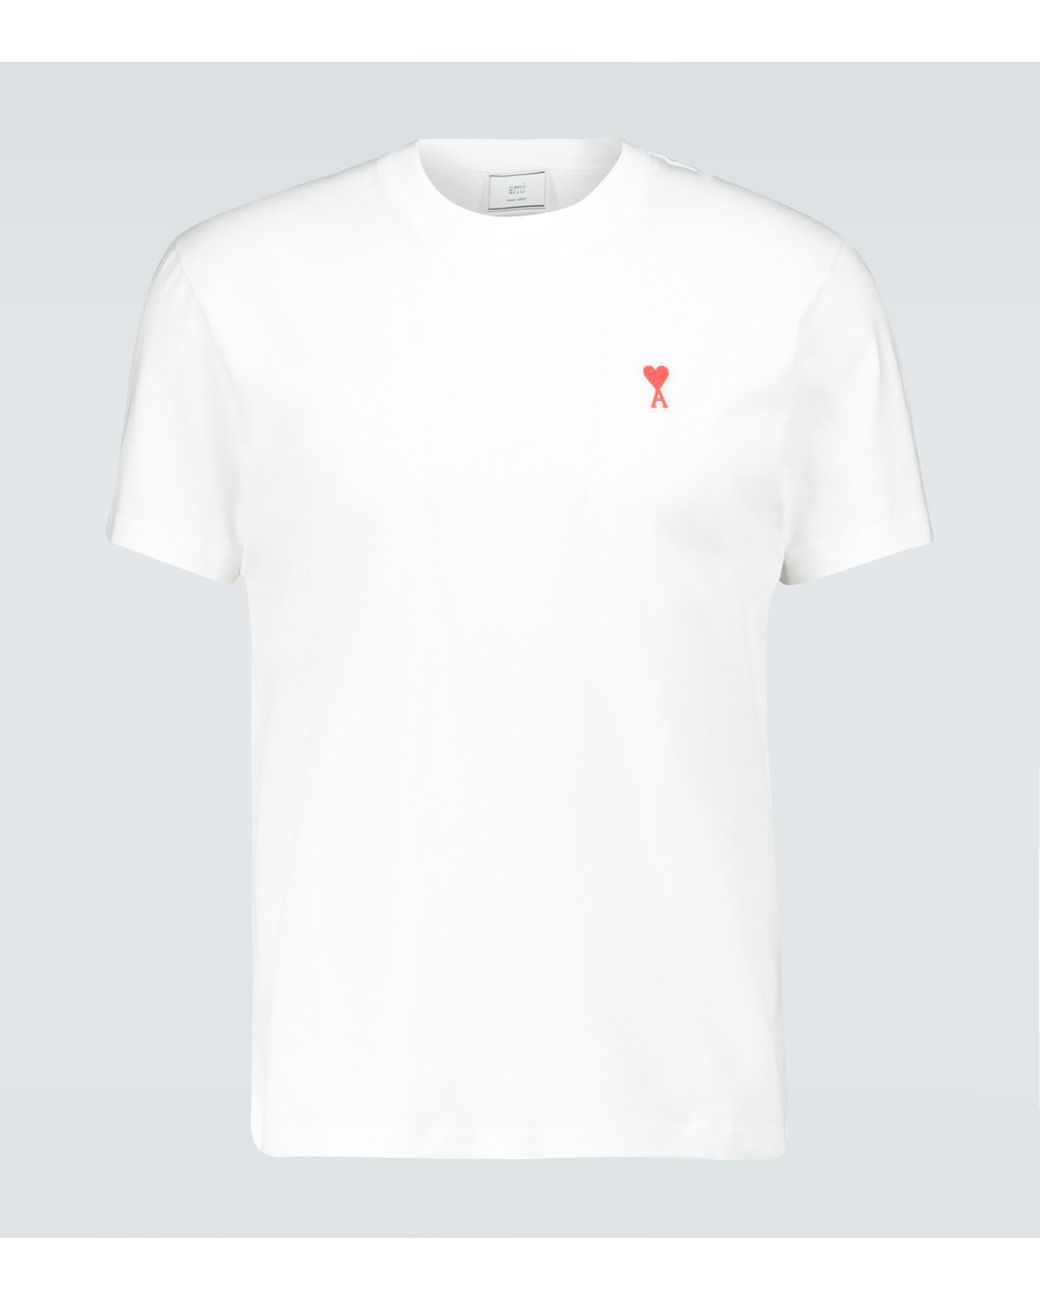 AMI De Coeur Cotton T-shirt in White for Men - Lyst